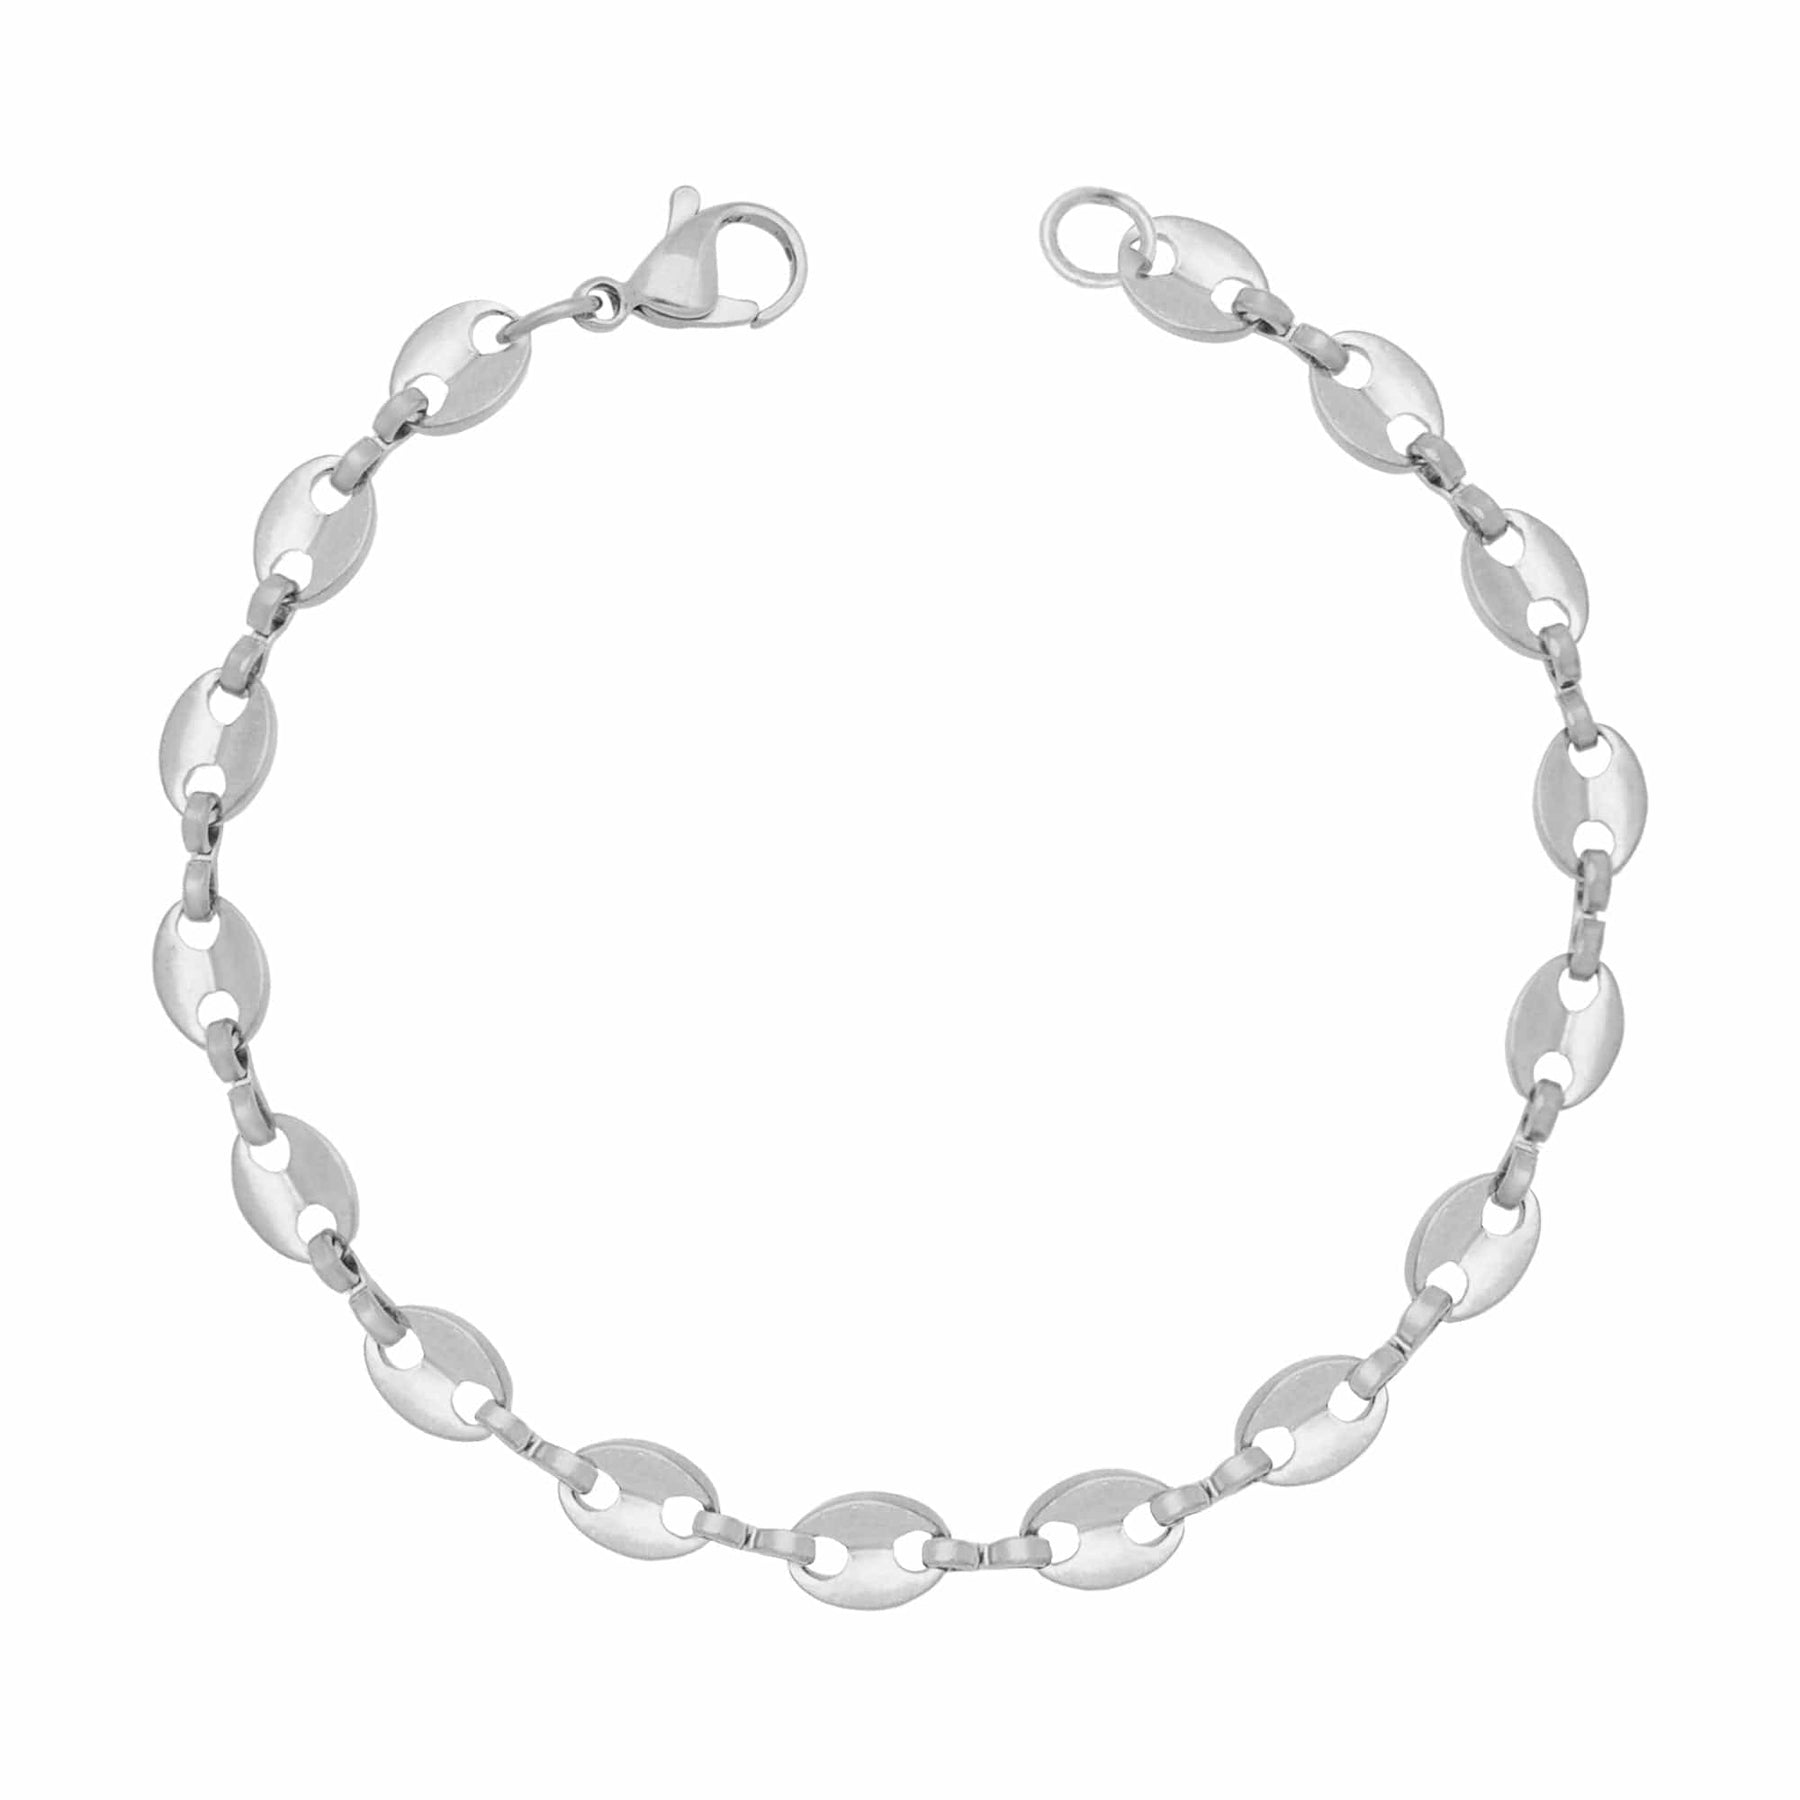 BohoMoon Stainless Steel Poppi Bracelet Silver / Small